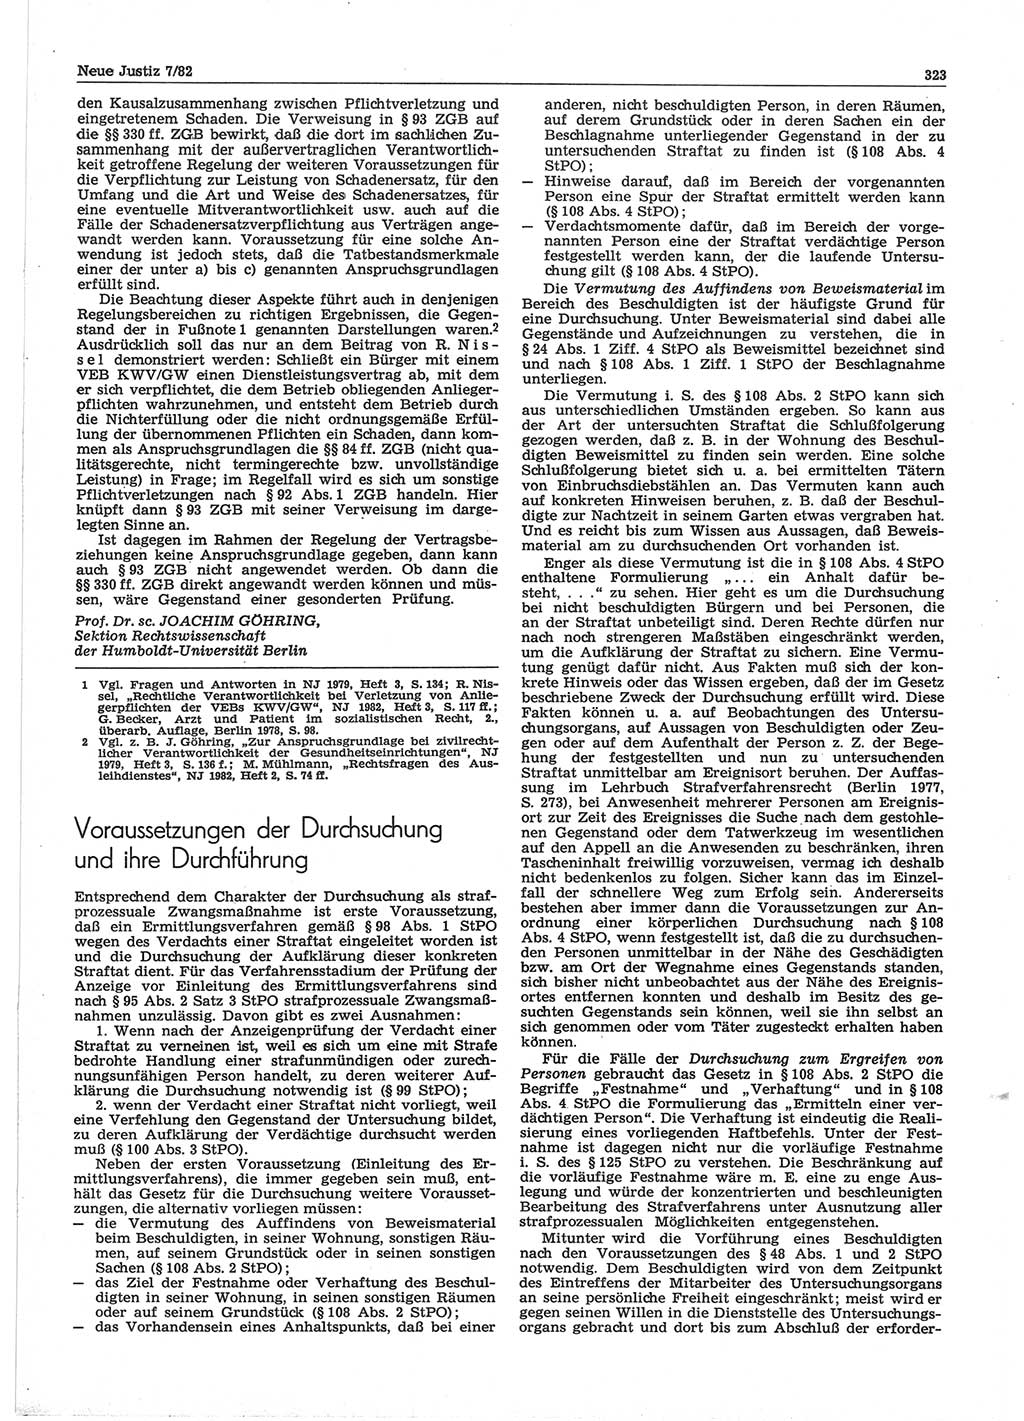 Neue Justiz (NJ), Zeitschrift für sozialistisches Recht und Gesetzlichkeit [Deutsche Demokratische Republik (DDR)], 36. Jahrgang 1982, Seite 323 (NJ DDR 1982, S. 323)